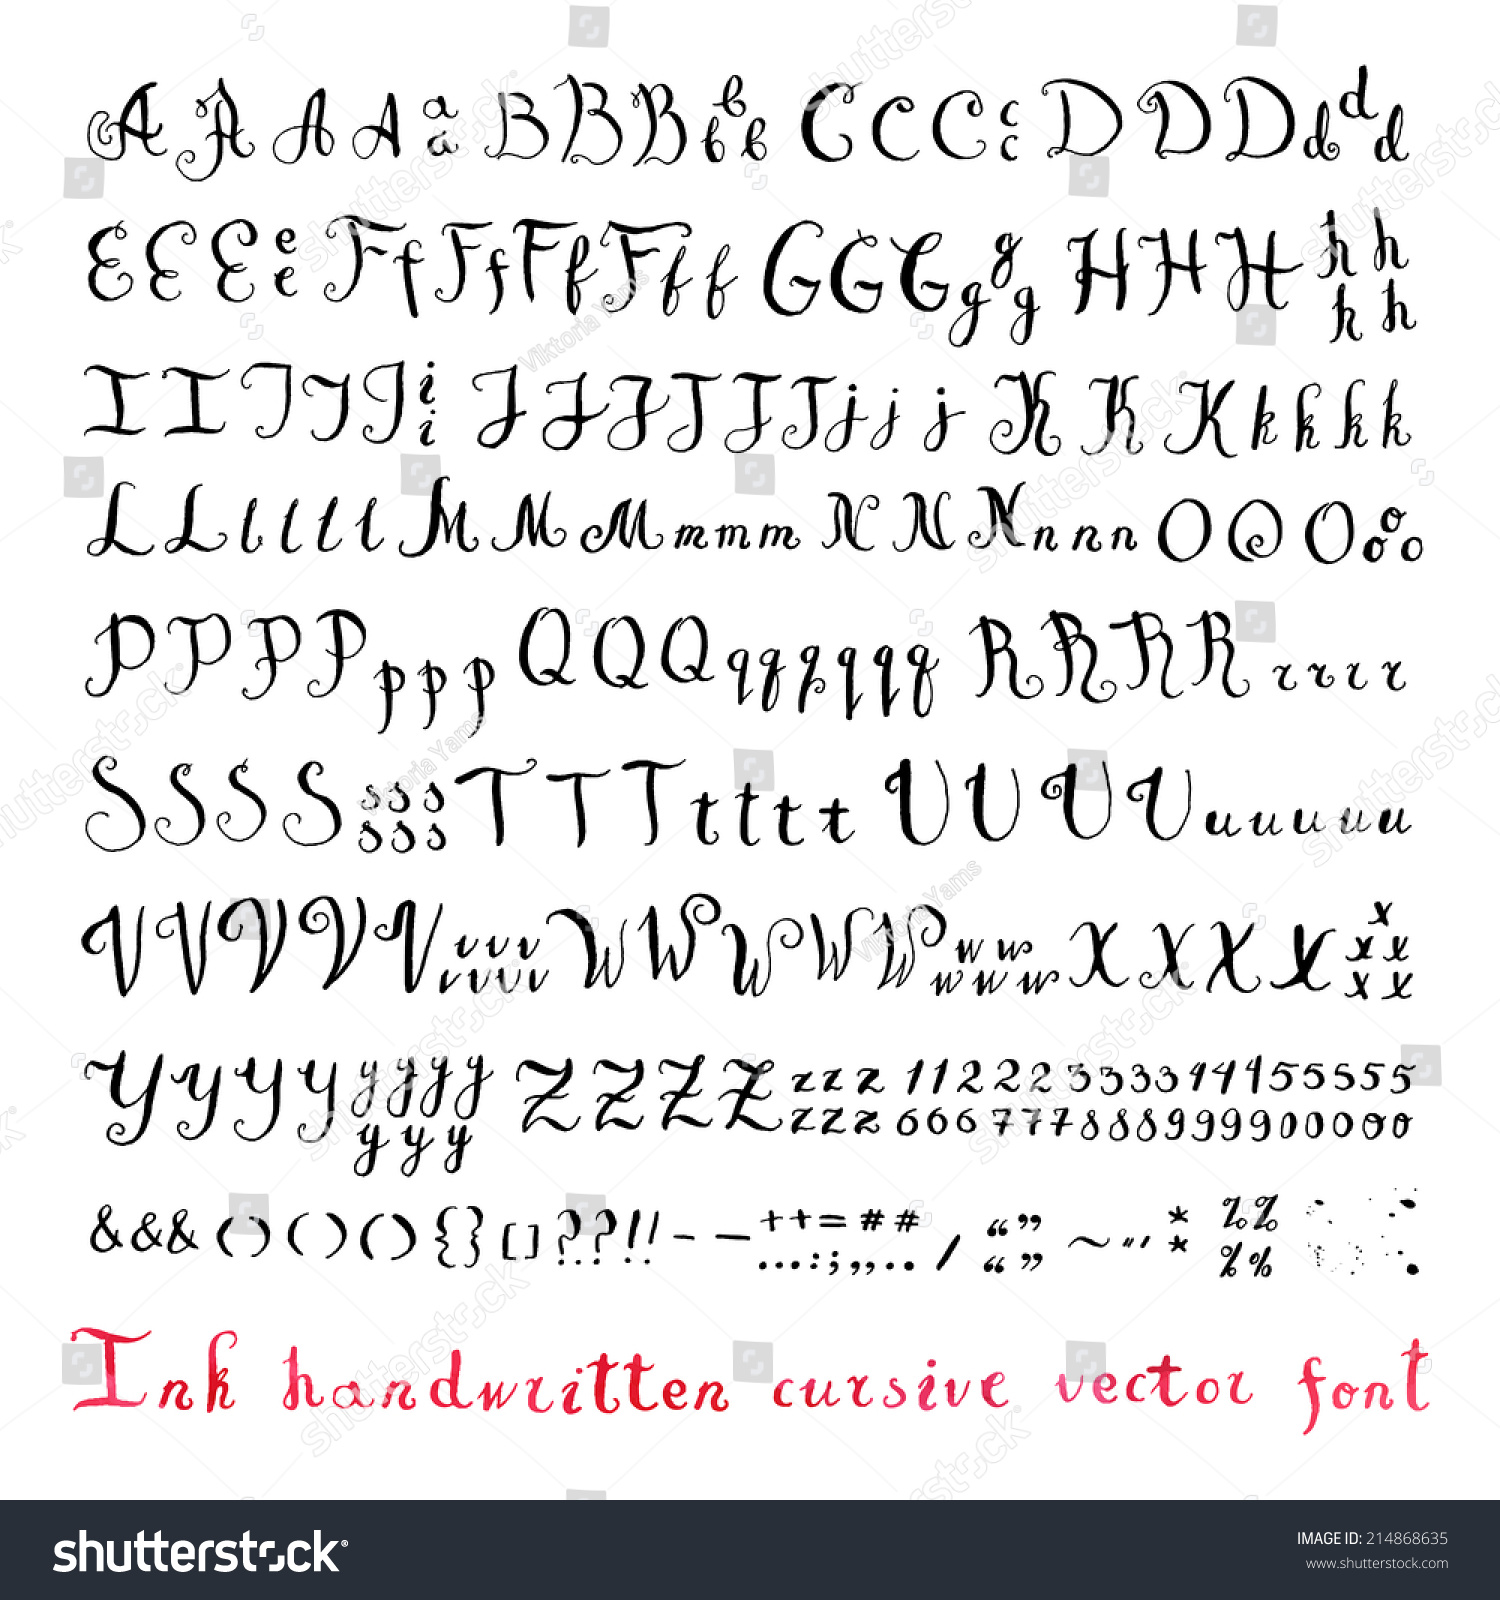 Cyrillic script